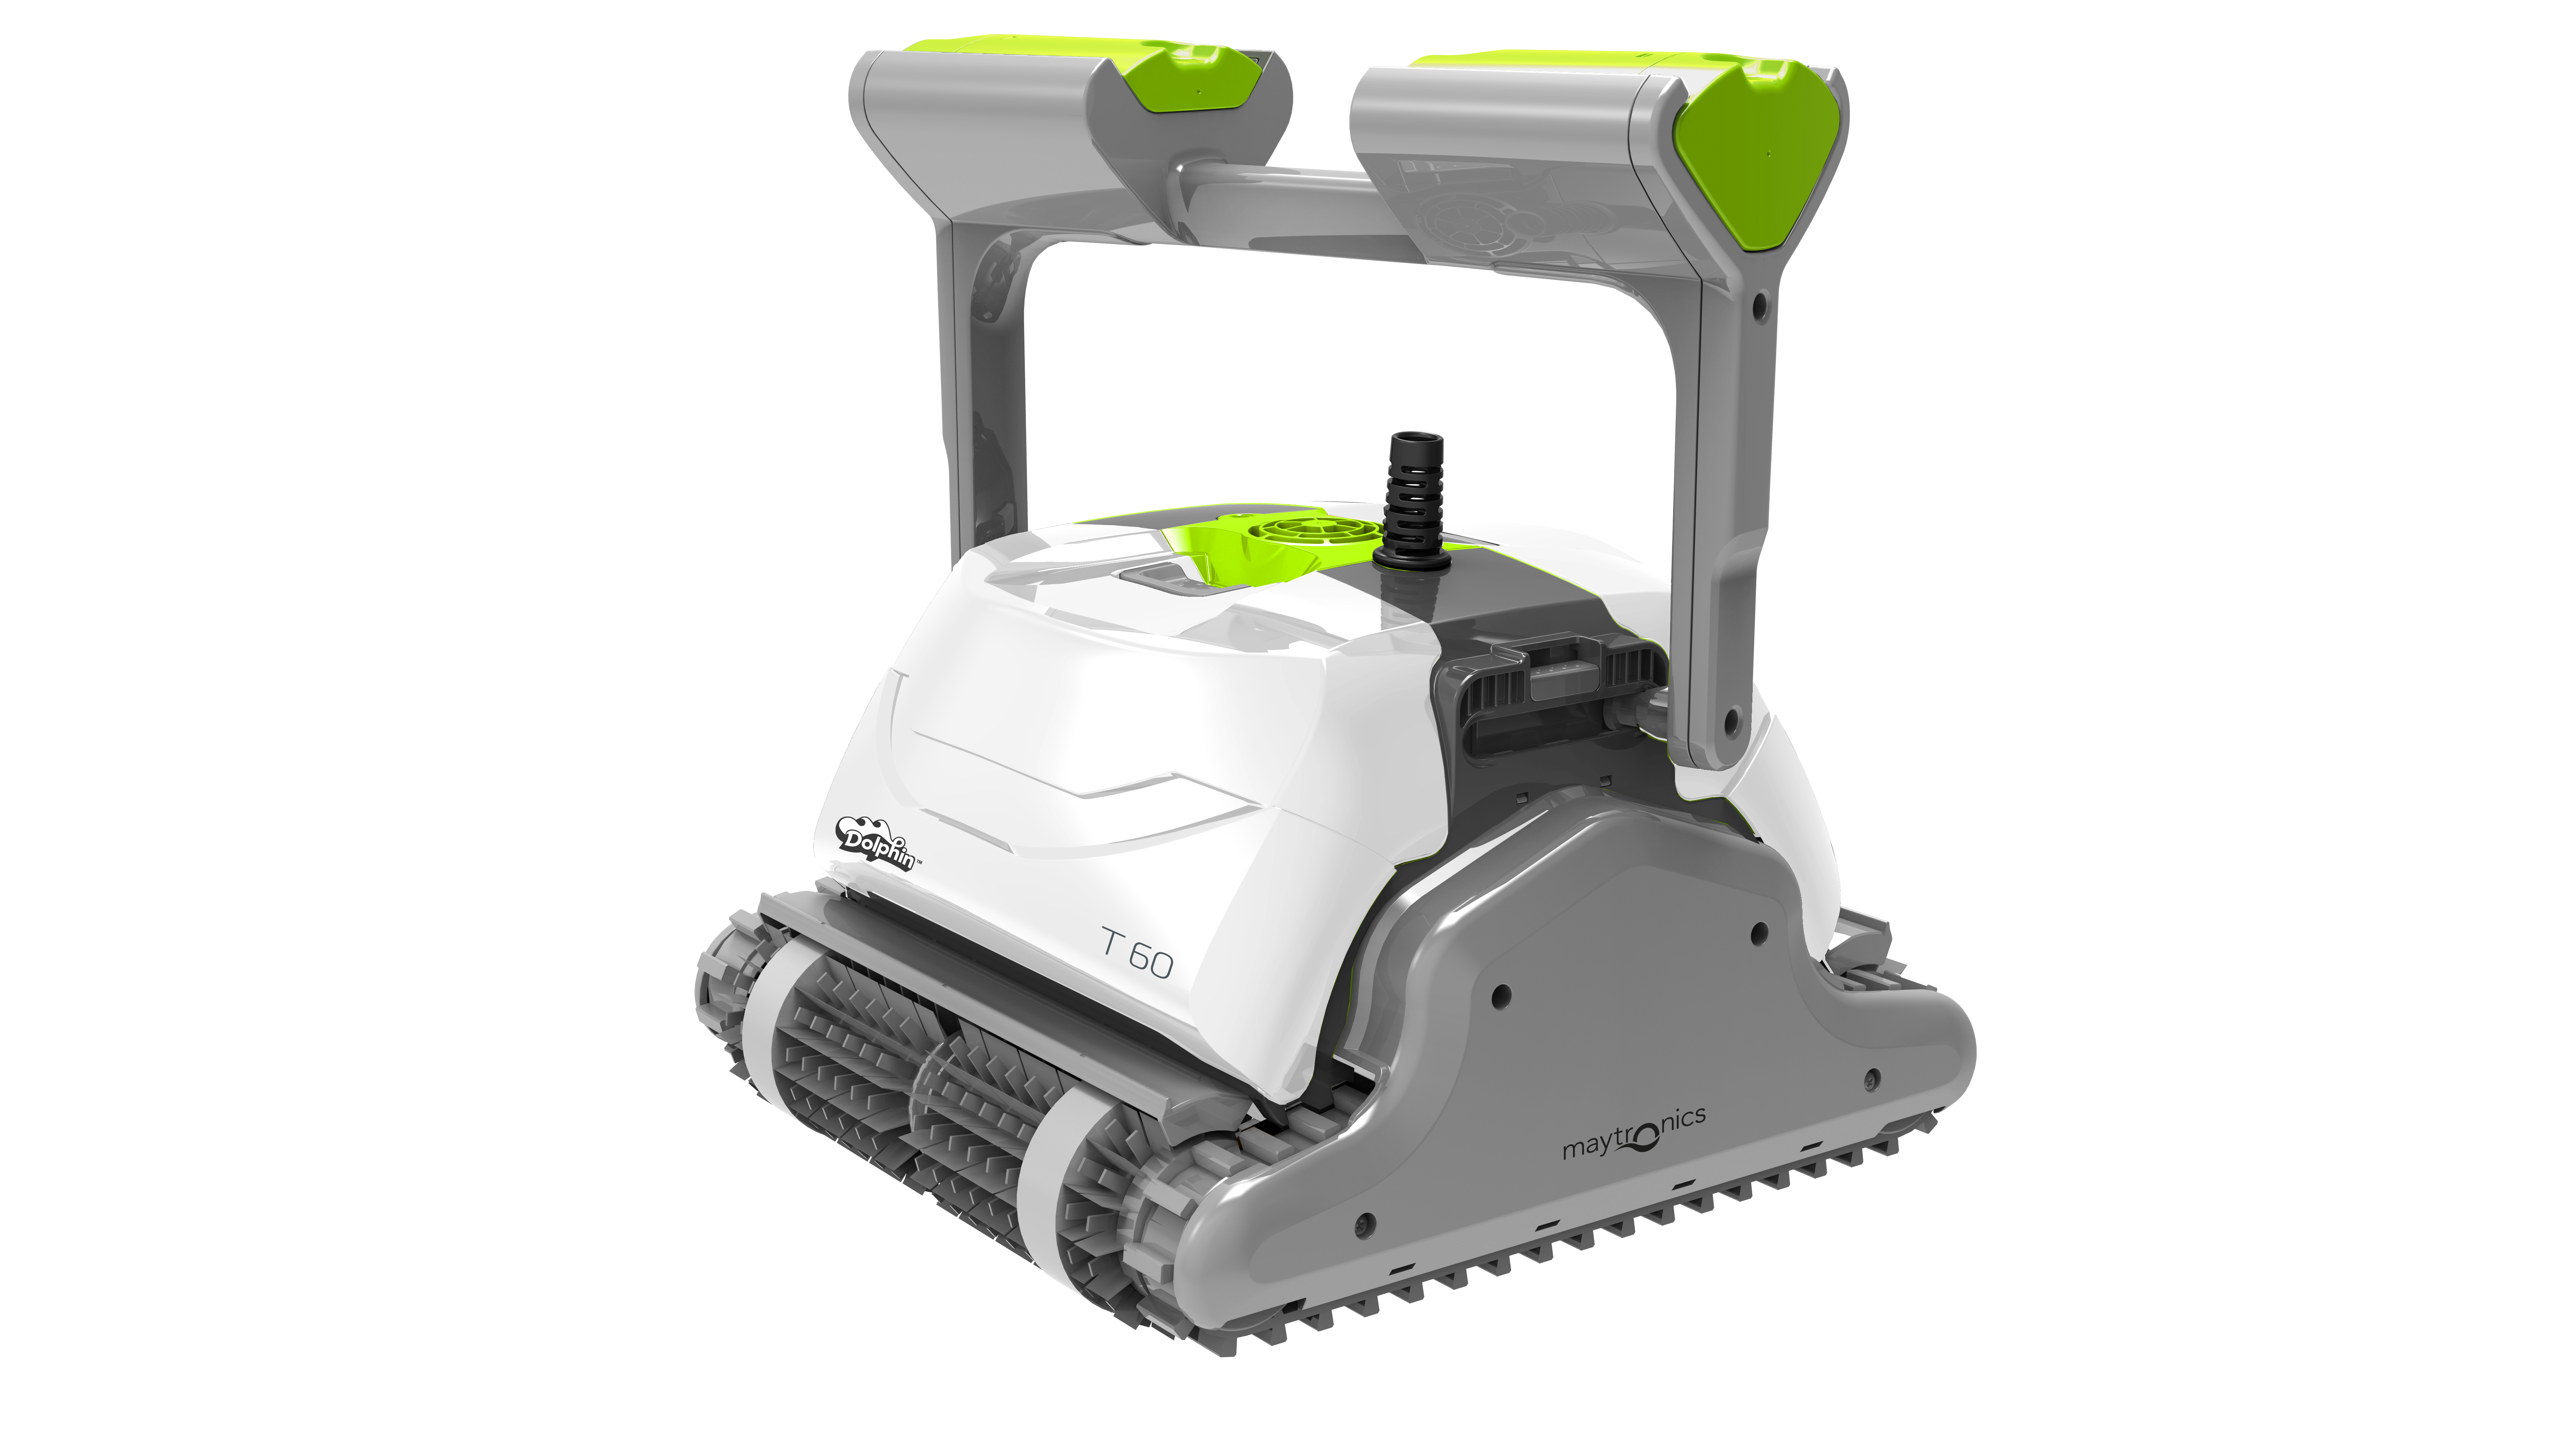 Robot de Piscine électrique Maytronics Dolphin T60 – Nettoyage des Fonds, Parois et Ligne d’Eau, Robot Pilotable Via Application Mobile, Fourni avec Caddy